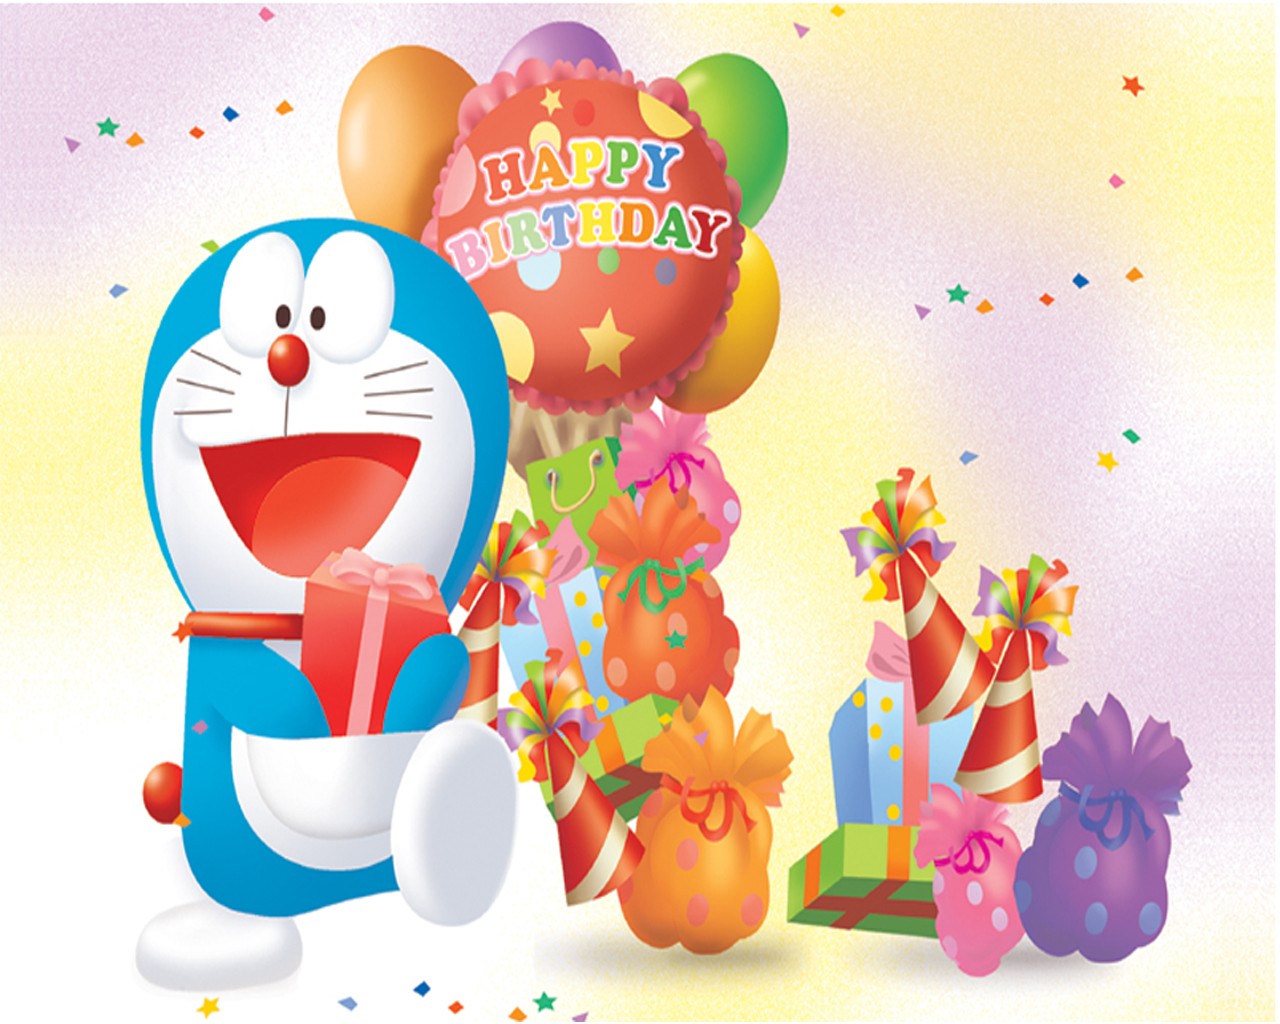 Happy Birthday – Doremon Image